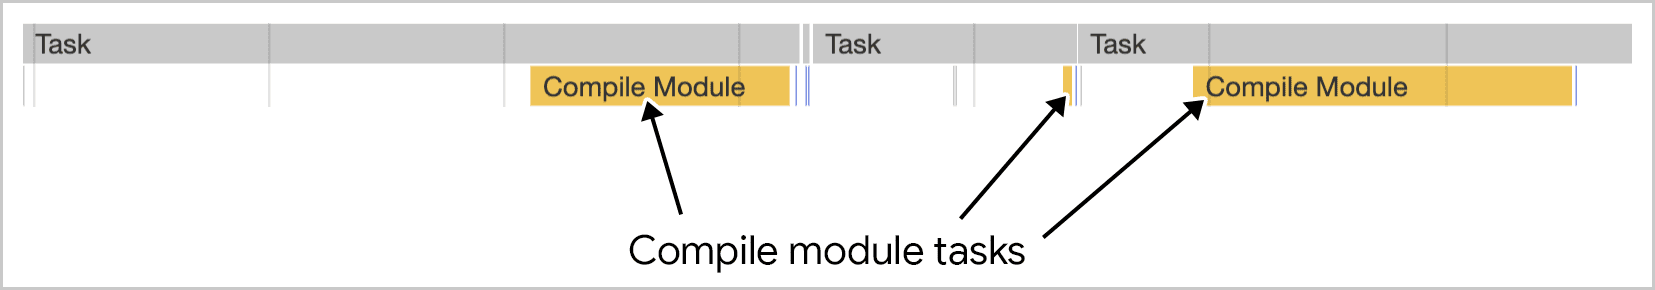 Die Modulkompilierung umfasst mehrere Aufgaben, wie in den Chrome-Entwicklertools dargestellt.